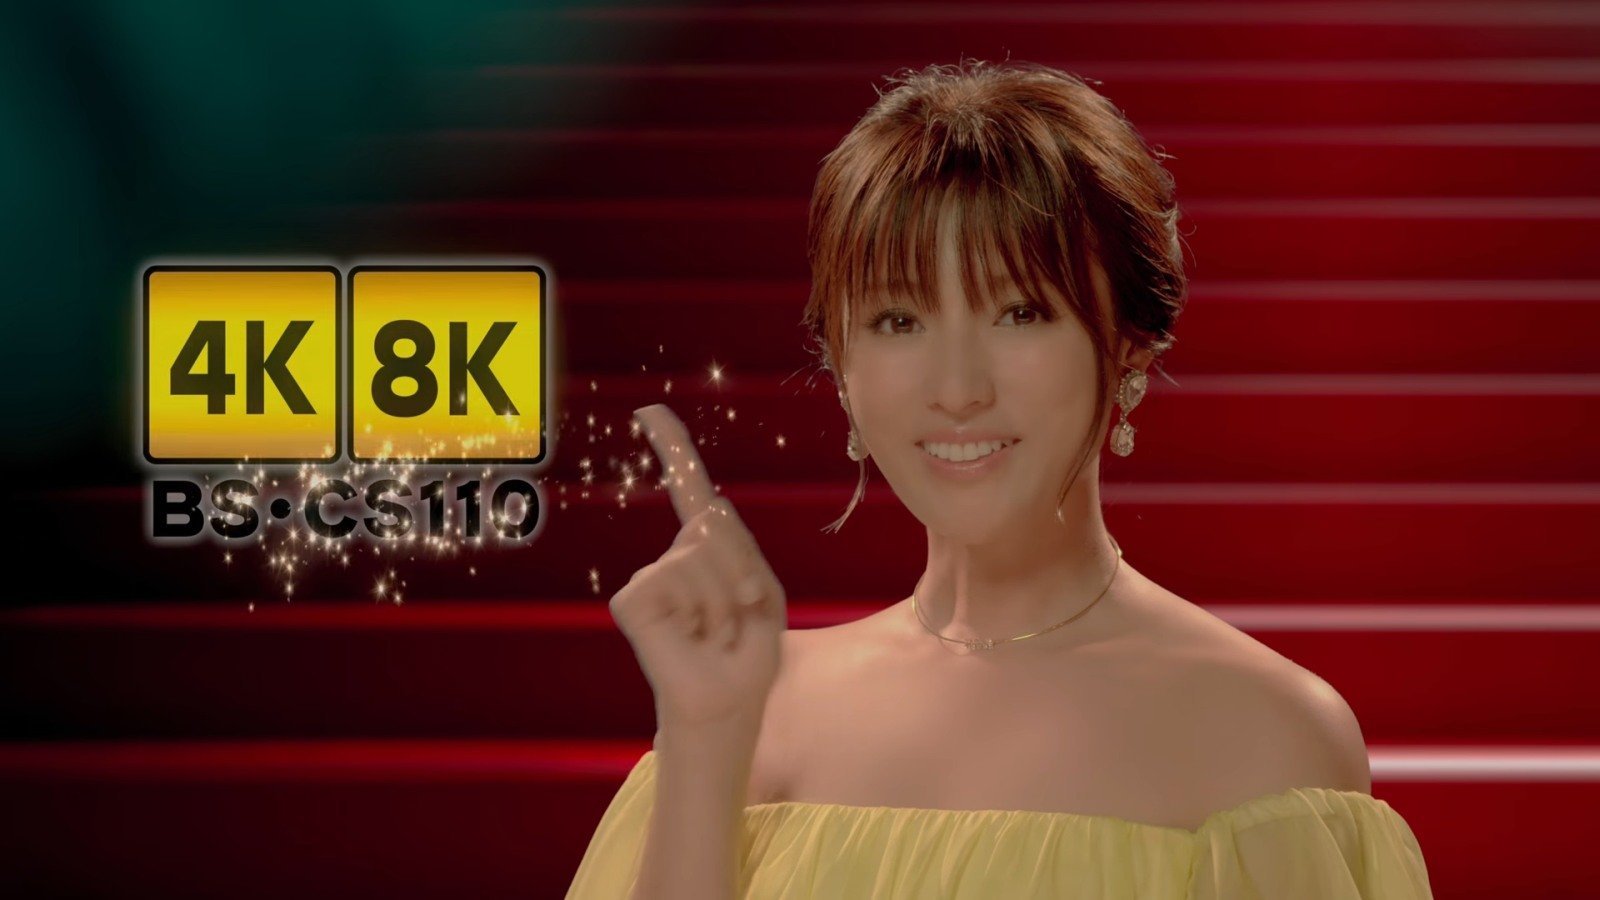 Τηλεοπτικά δίκτυα στην Ιαπωνία ξεκίνησαν να μεταδίδουν περιεχόμενο 8K